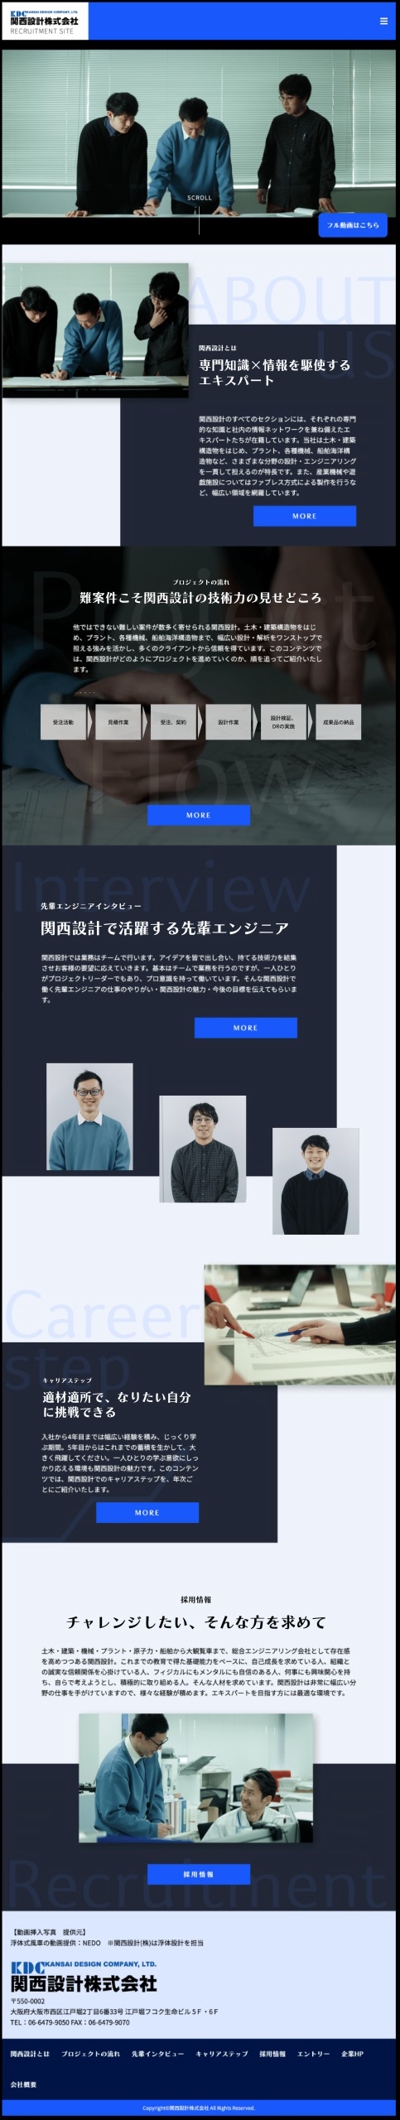 関西設計株式会社様の採用サイトの制作